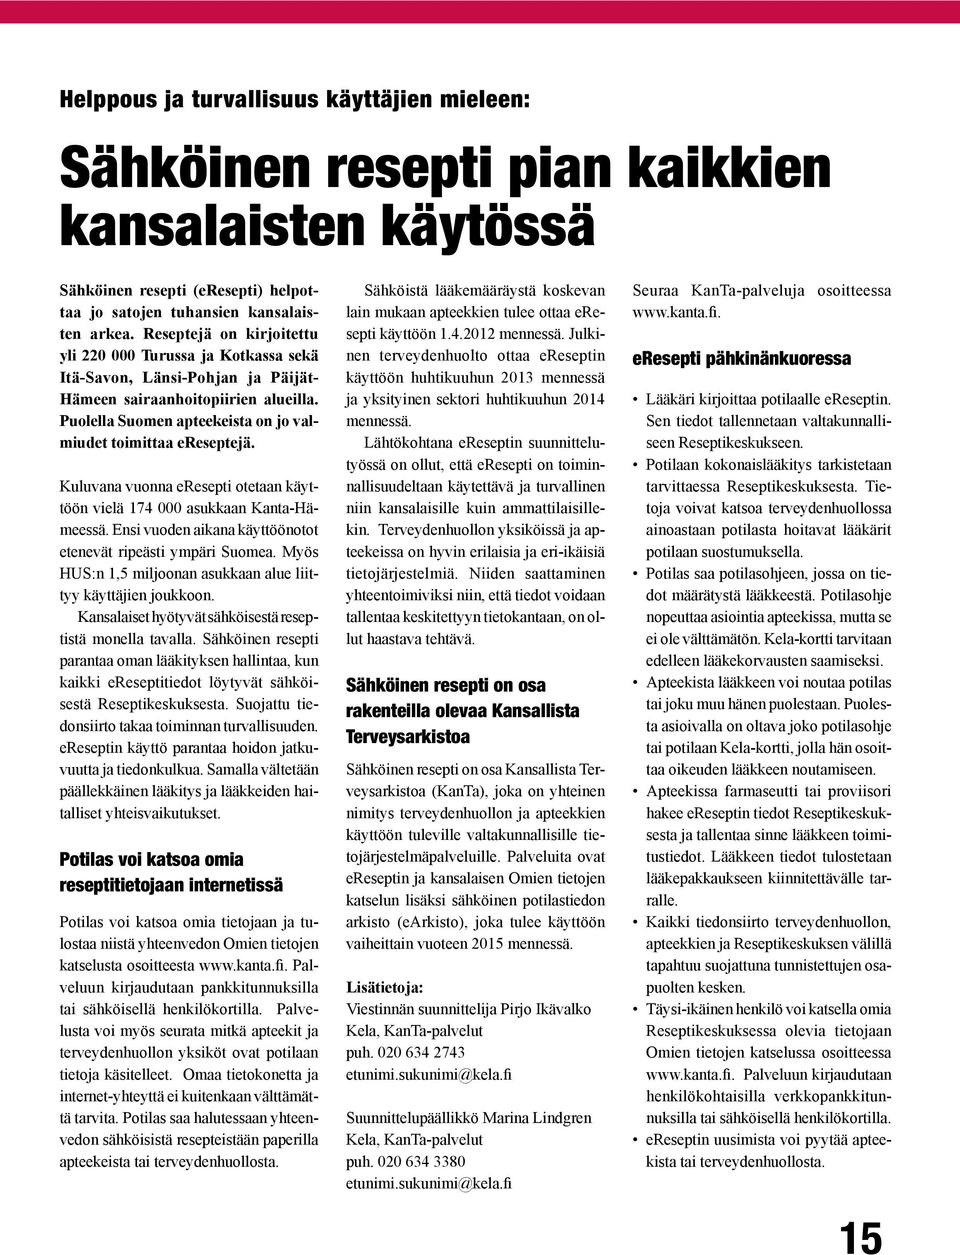 Kuluvana vuonna eresepti otetaan käyttöön vielä 174 000 asukkaan Kanta-Hämeessä. Ensi vuoden aikana käyttöönotot etenevät ripeästi ympäri Suomea.